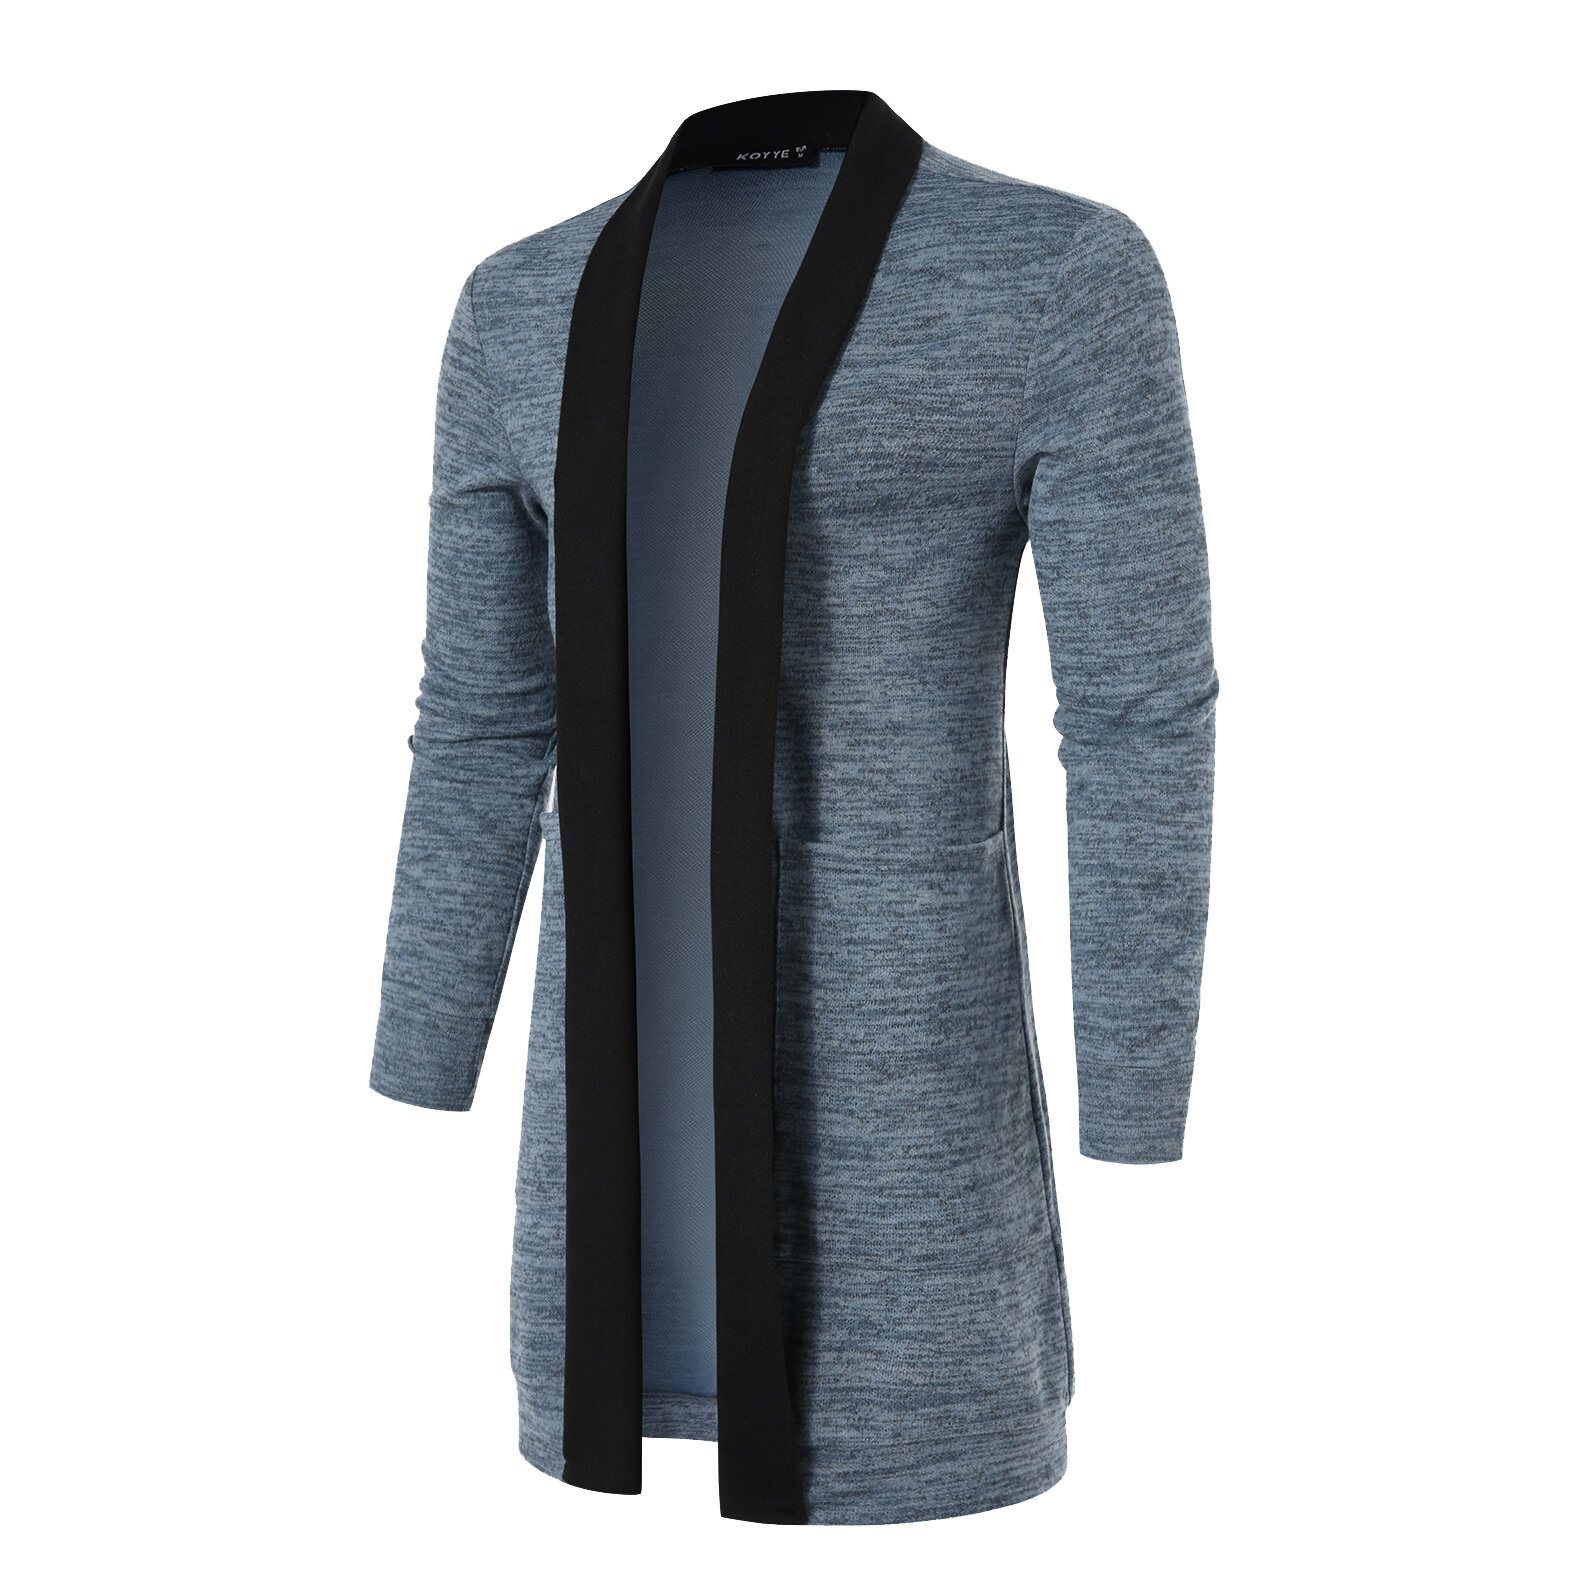 uéter de primavera nuevo para hombres con manga larga, parcheado, delgado, de punto, de alta calidad, informal, abrigo de punto ajustado para hombres